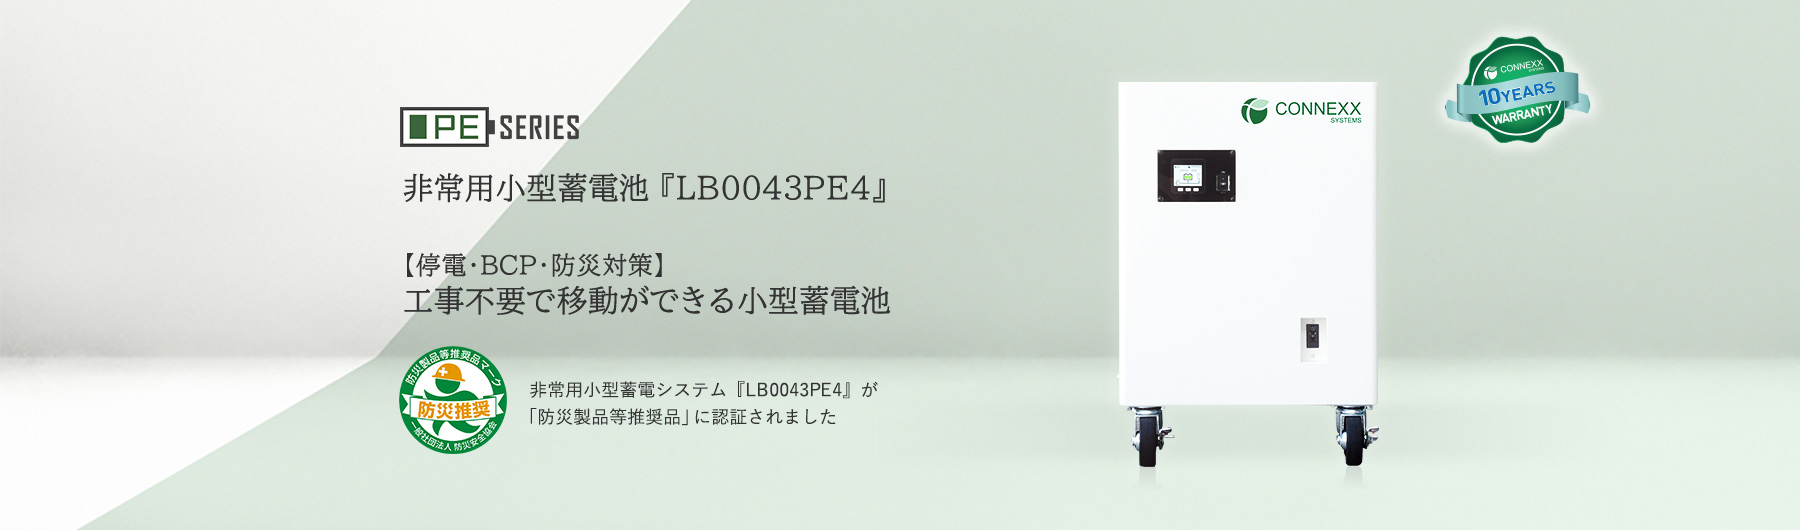 非常用小型蓄電池『LB0043PE4』の主な製品特長をご紹介します。